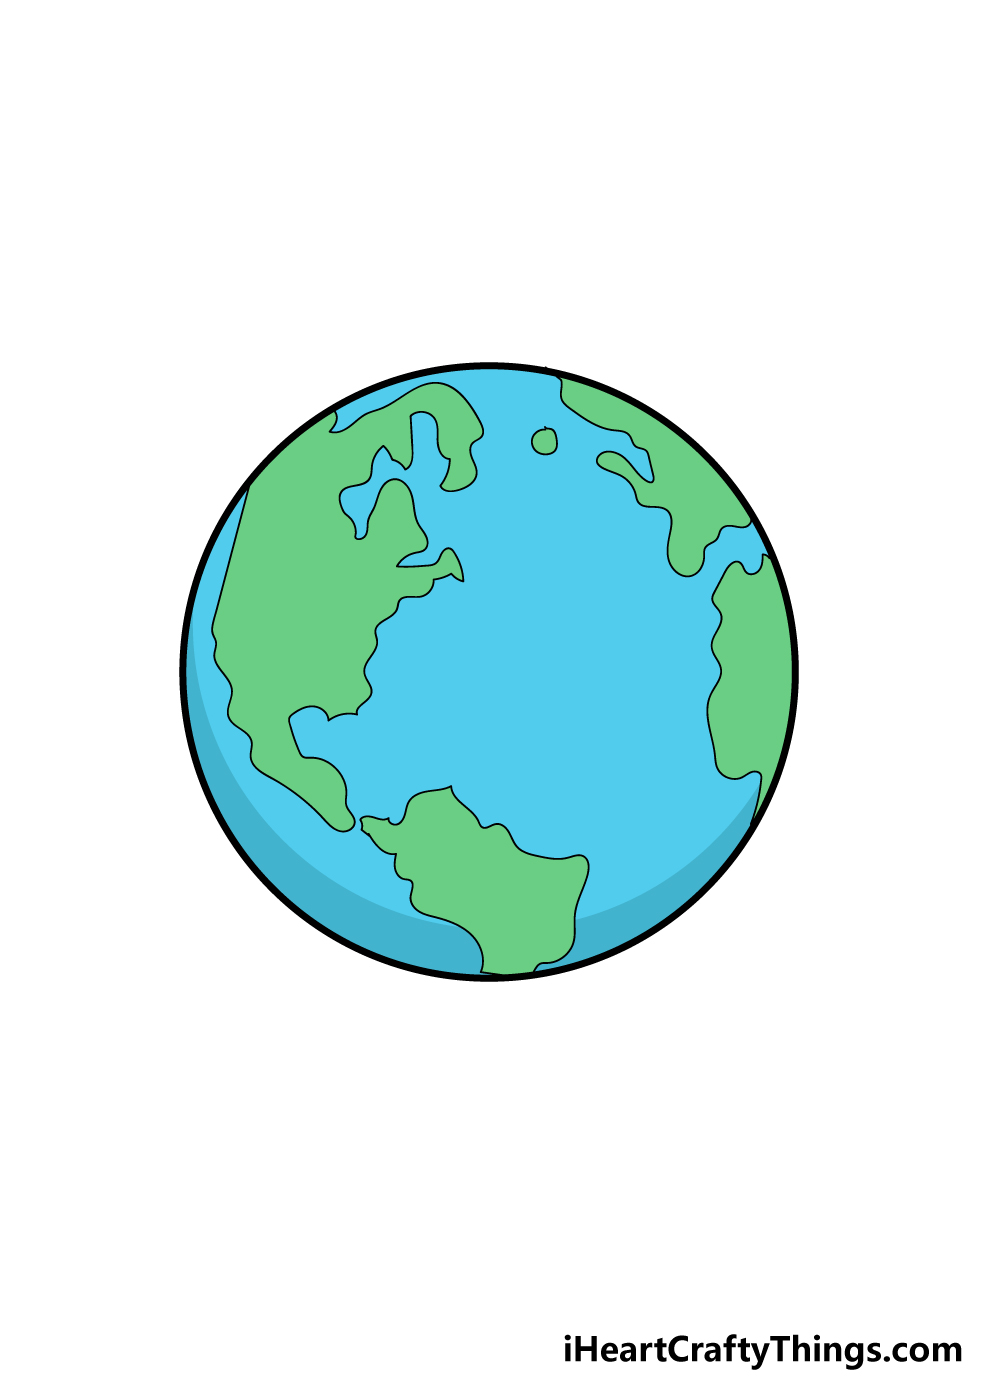 Xem hơn 100 ảnh về hình vẽ trái đất đơn giản - daotaonec